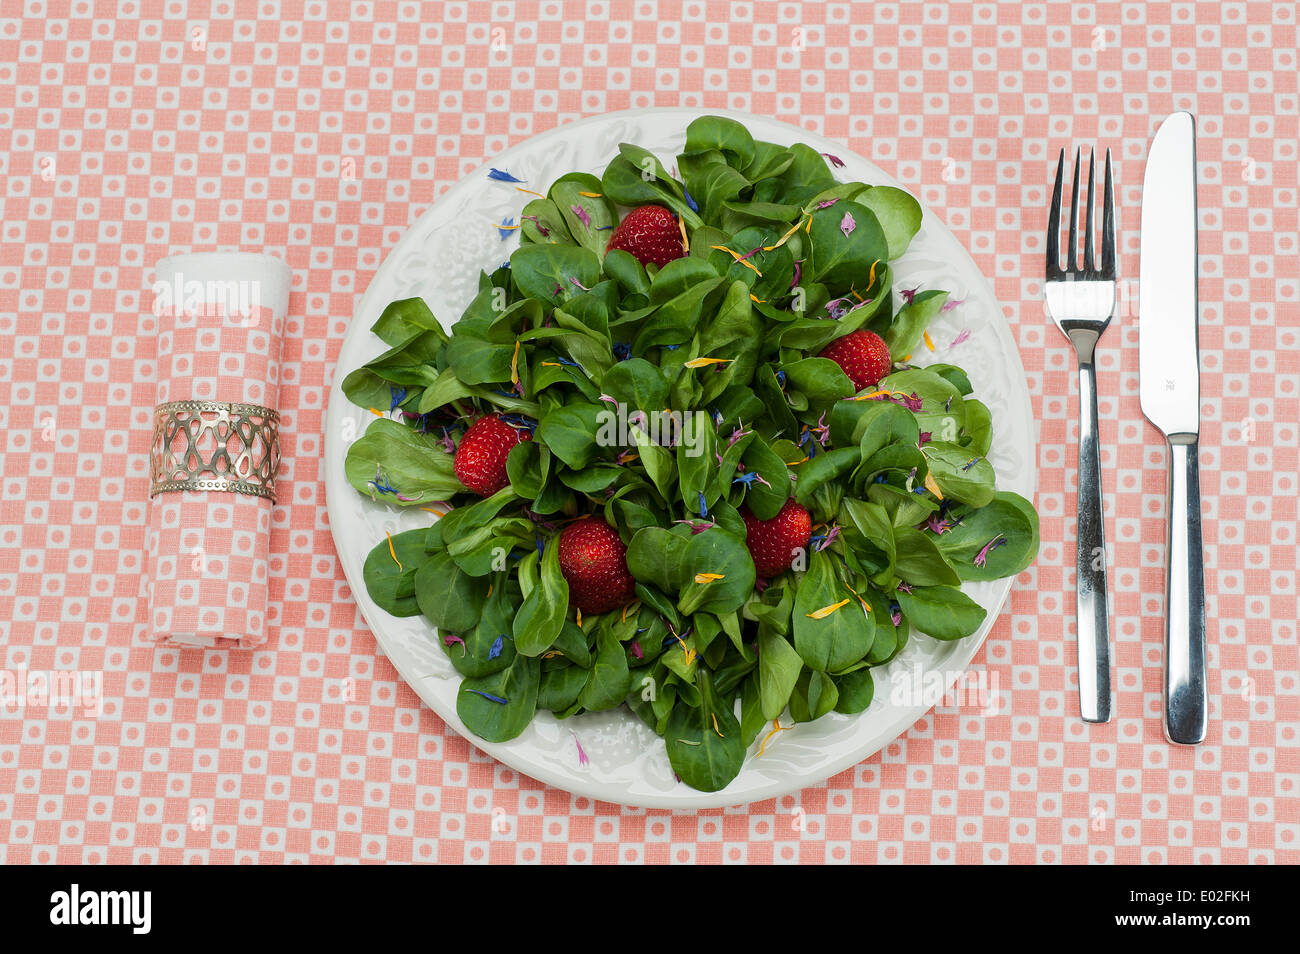 Feldsalat mit Erdbeeren und Blütenblätter auf einen Teller, Serviette, Besteck serviert Stockfoto